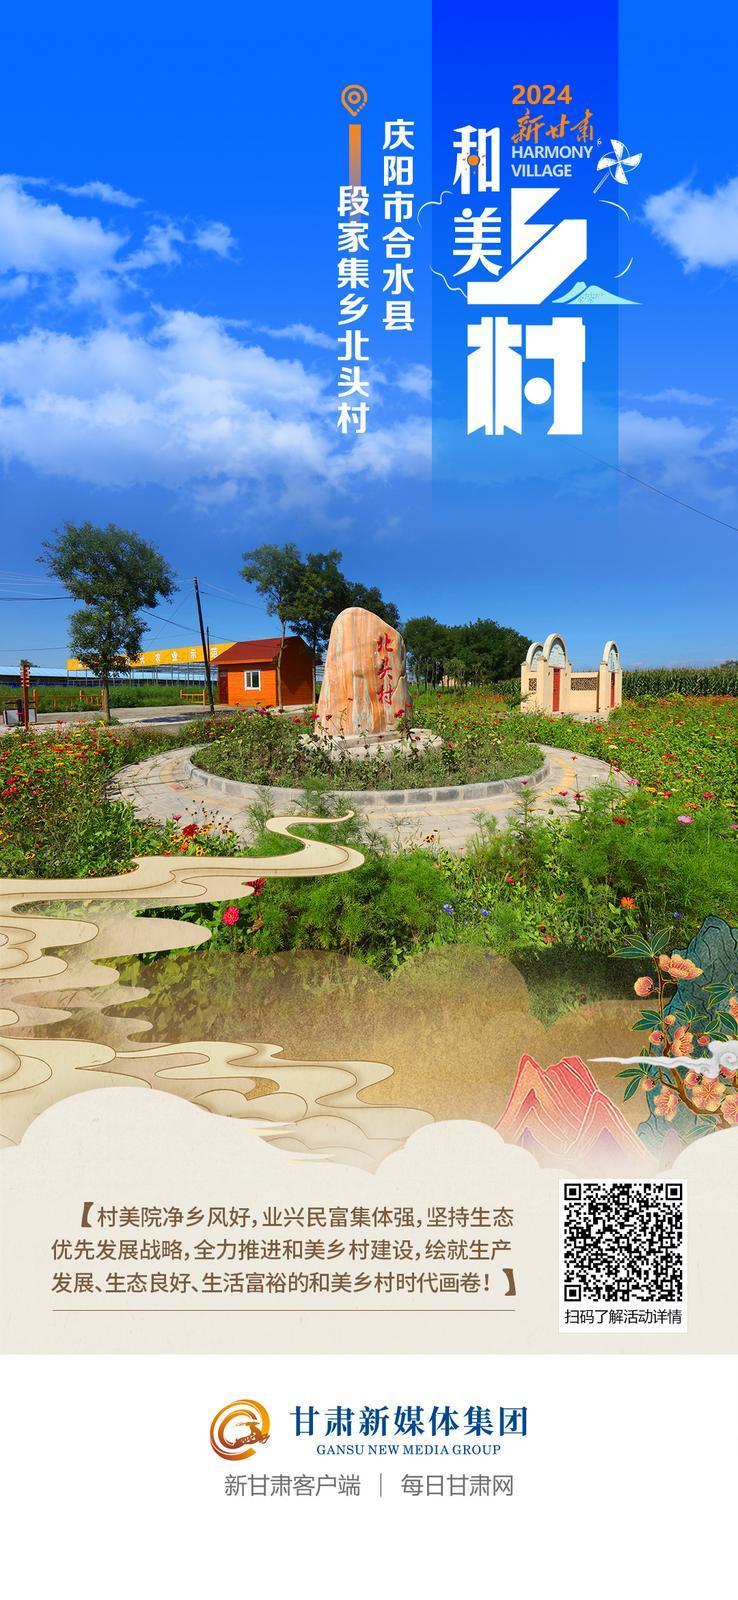 【微海報】2024新甘肅“和美鄉村”主題宣傳|慶陽市合水縣段家集鄉北頭村